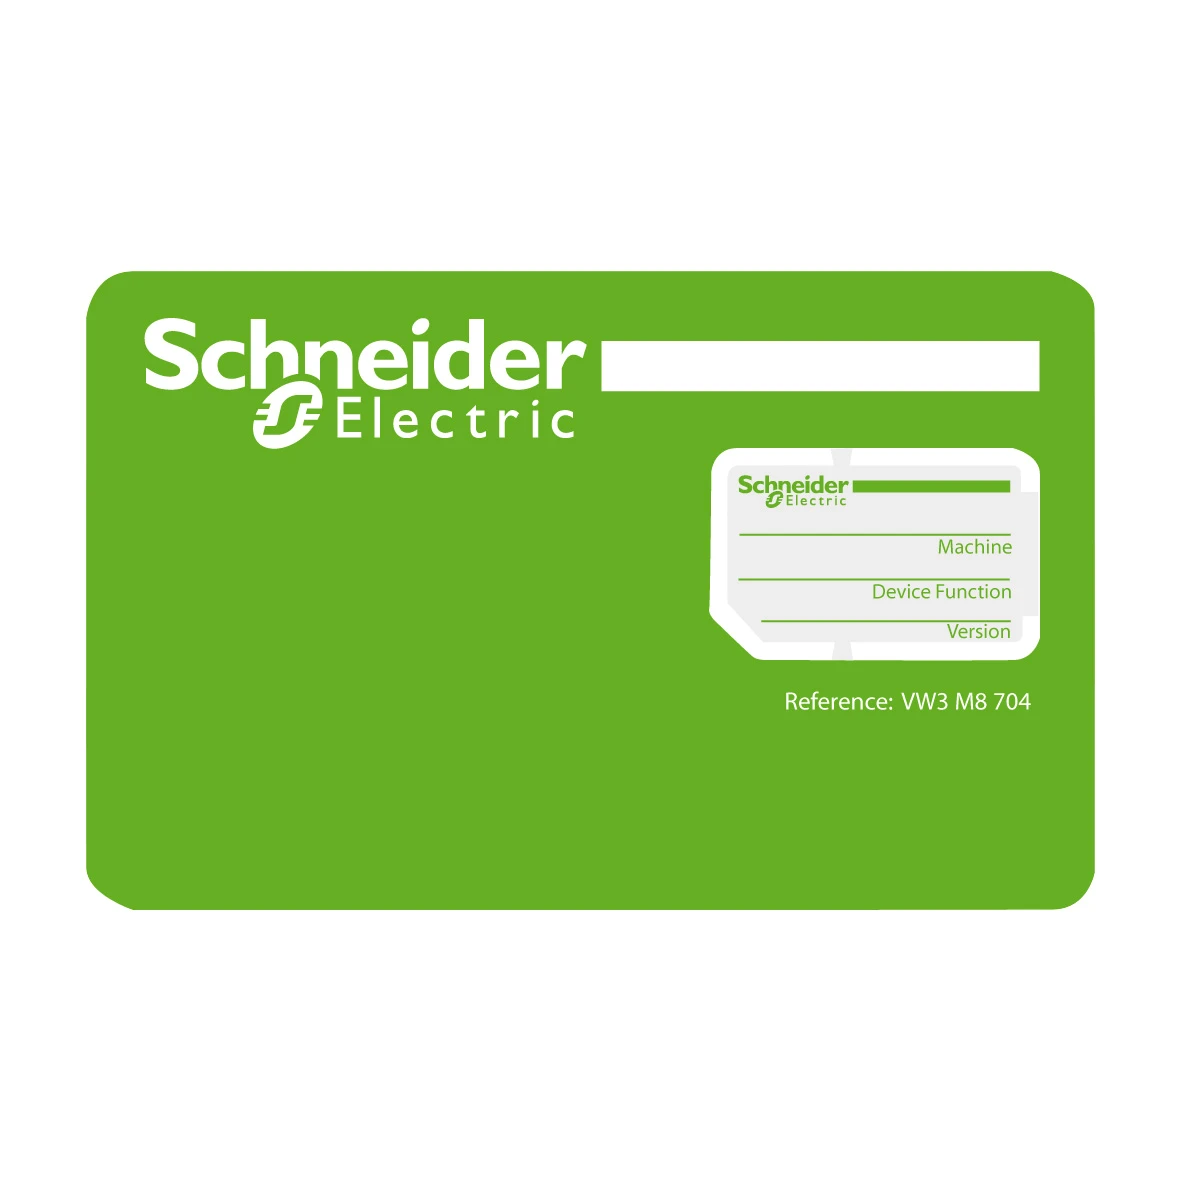 2343029 - Schneider Electric VW3M8704